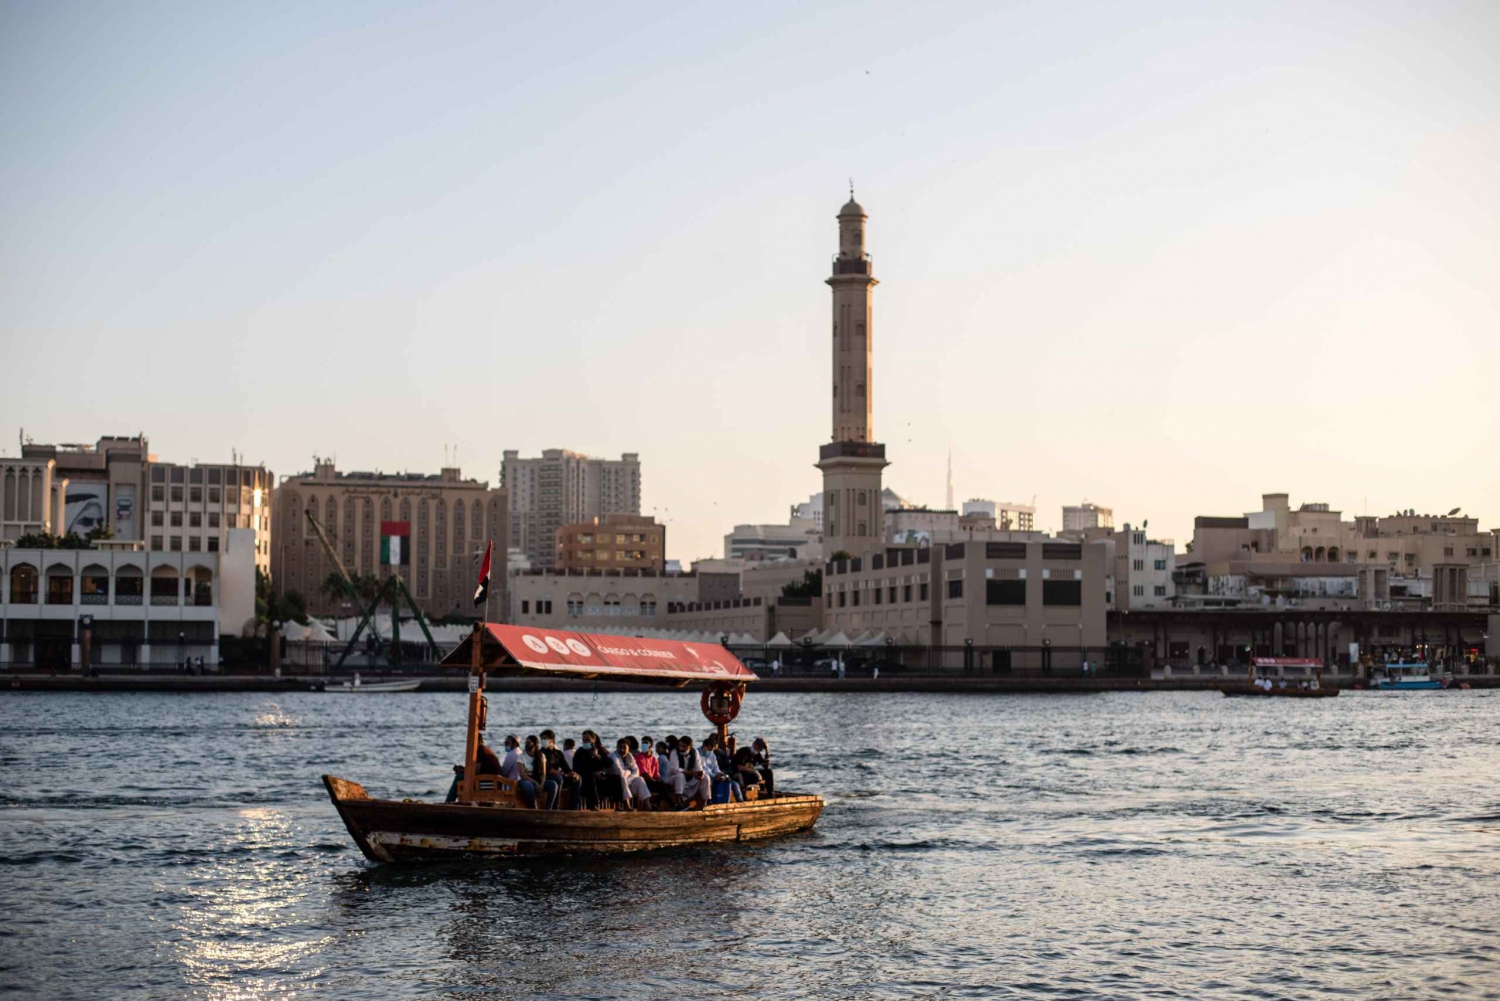 Dubai: Old Dubai Souks, Food tastings, Museum and Boat ride